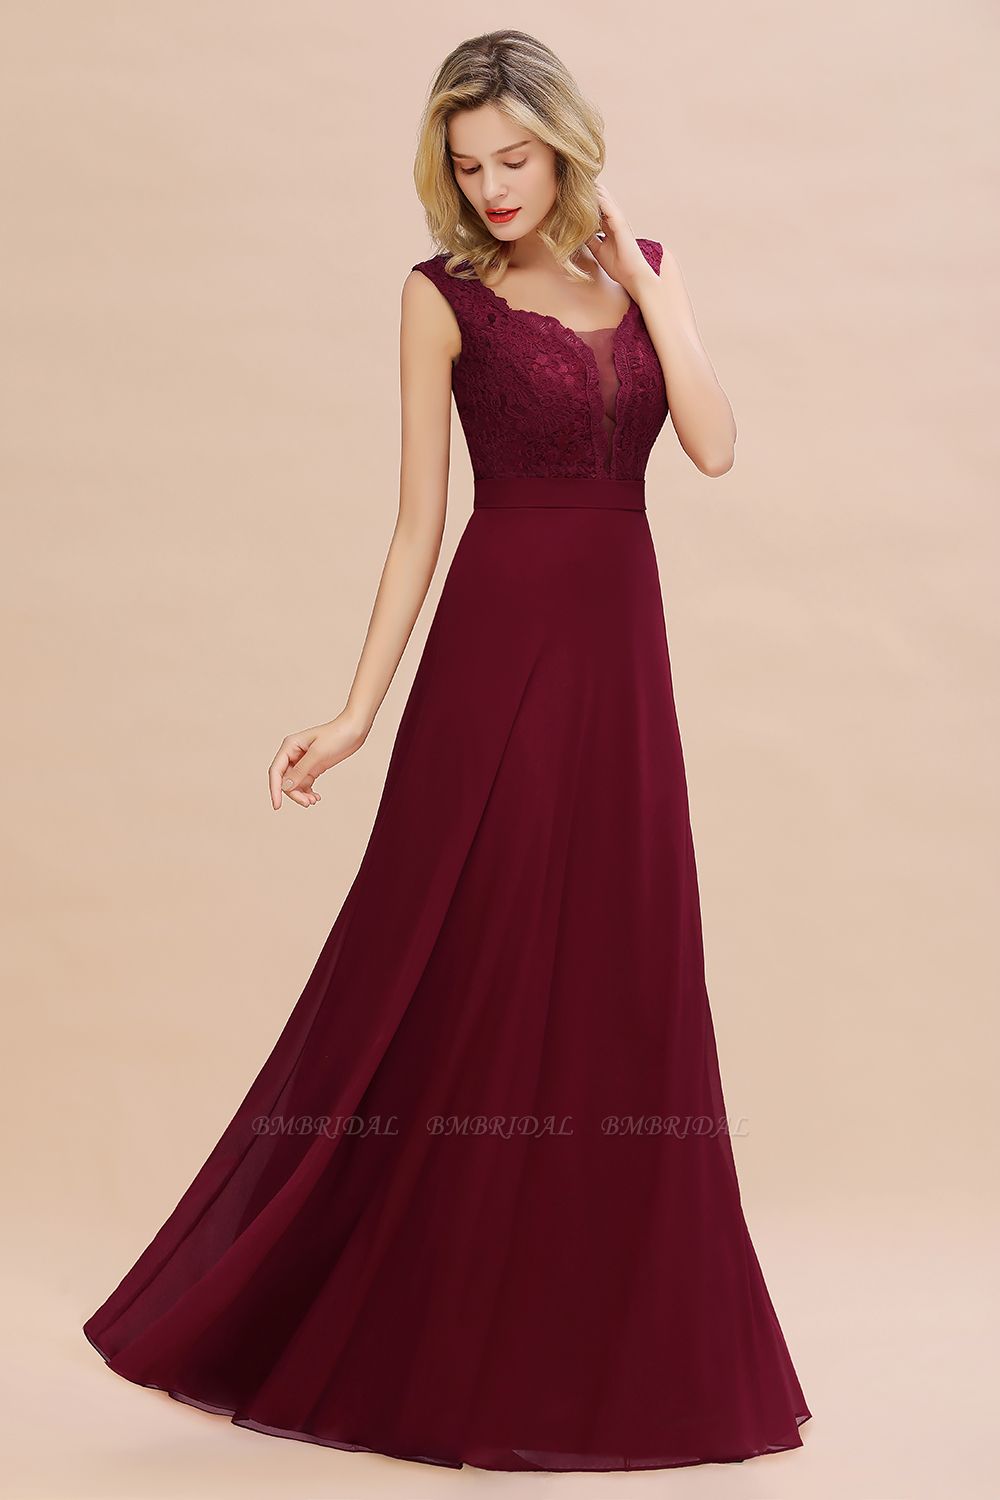 BMbridal Elegant Lace Deep V-Neck Burgundy Bridesmaid Dress Affordable